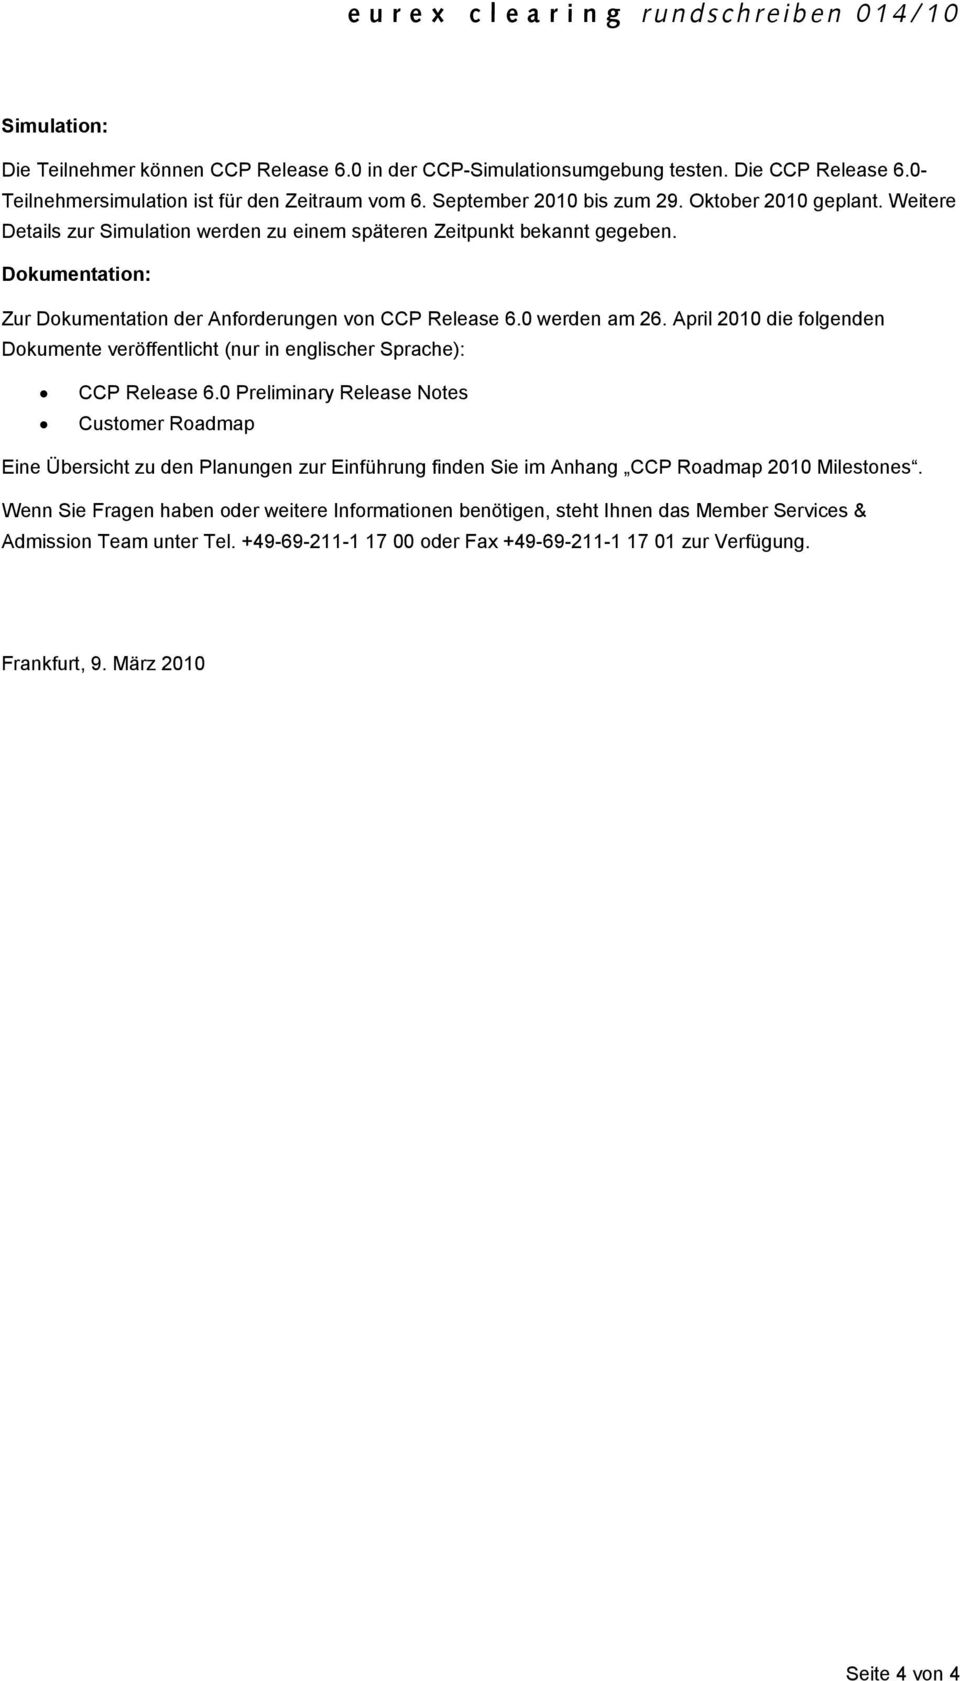 April 2010 die folgenden Dokumente veröffentlicht (nur in englischer Sprache): CCP Release 6.